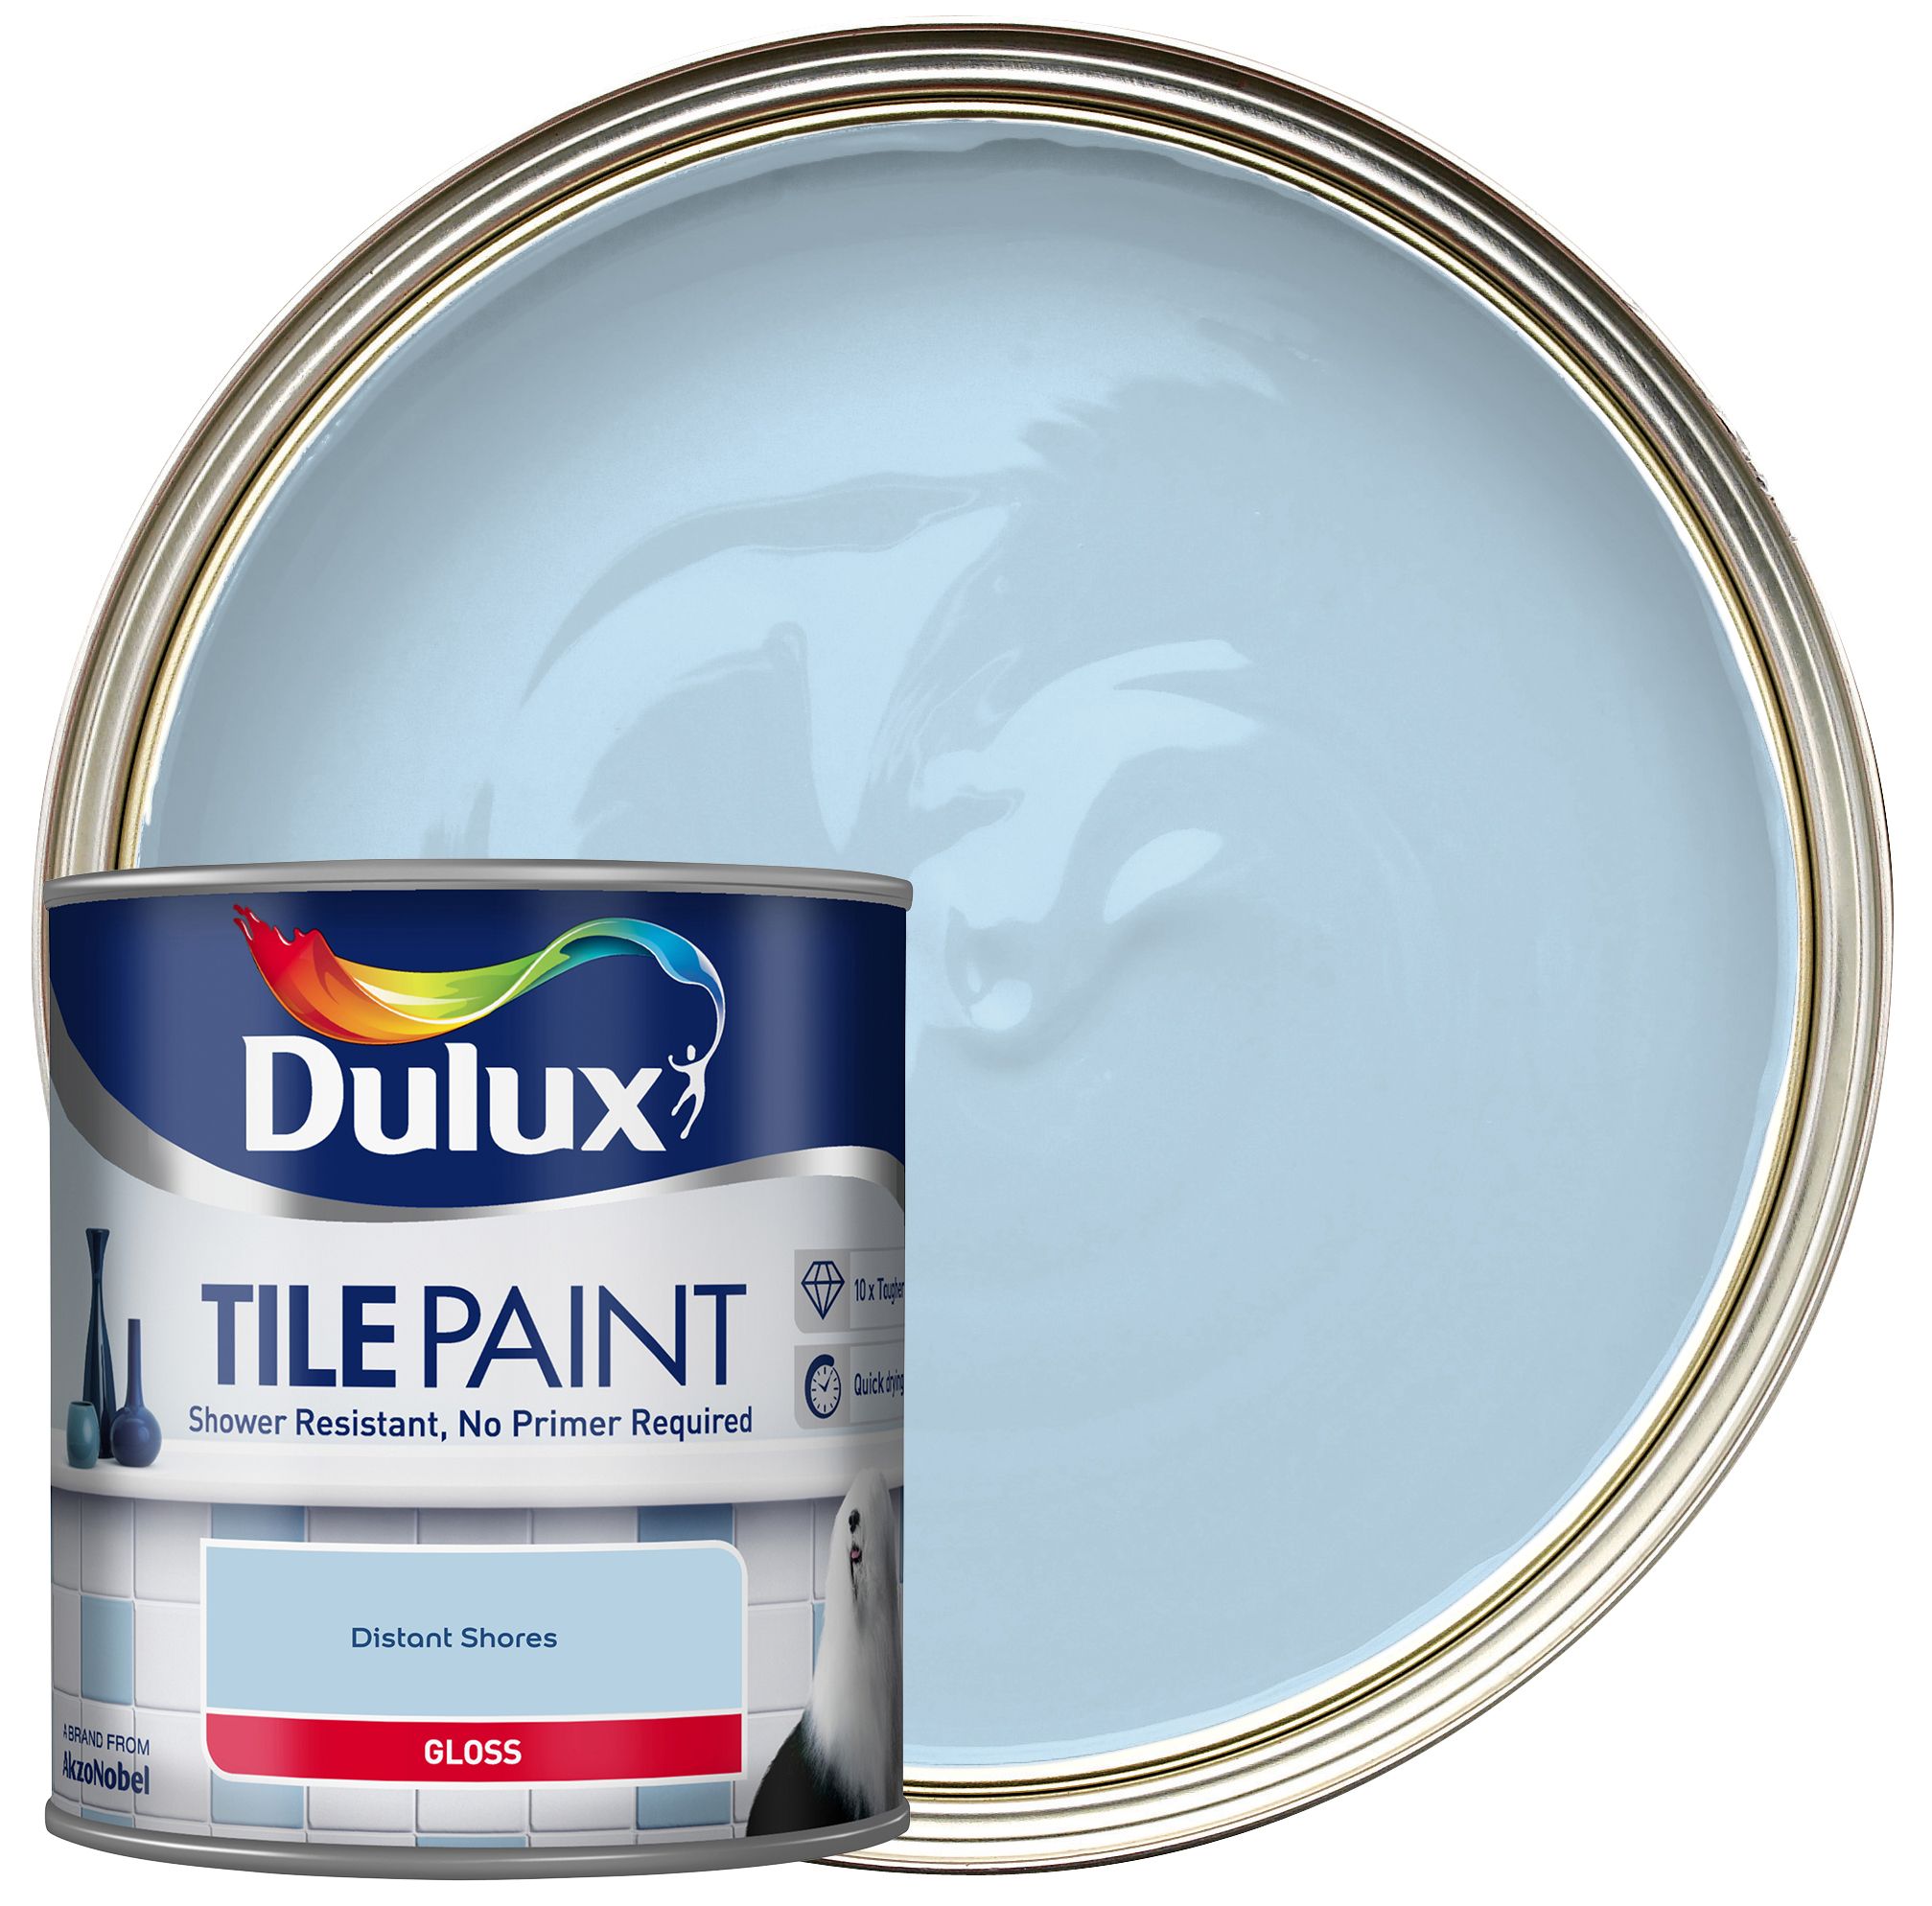 Dulux Tile Paint - Distant Shores - 600ml